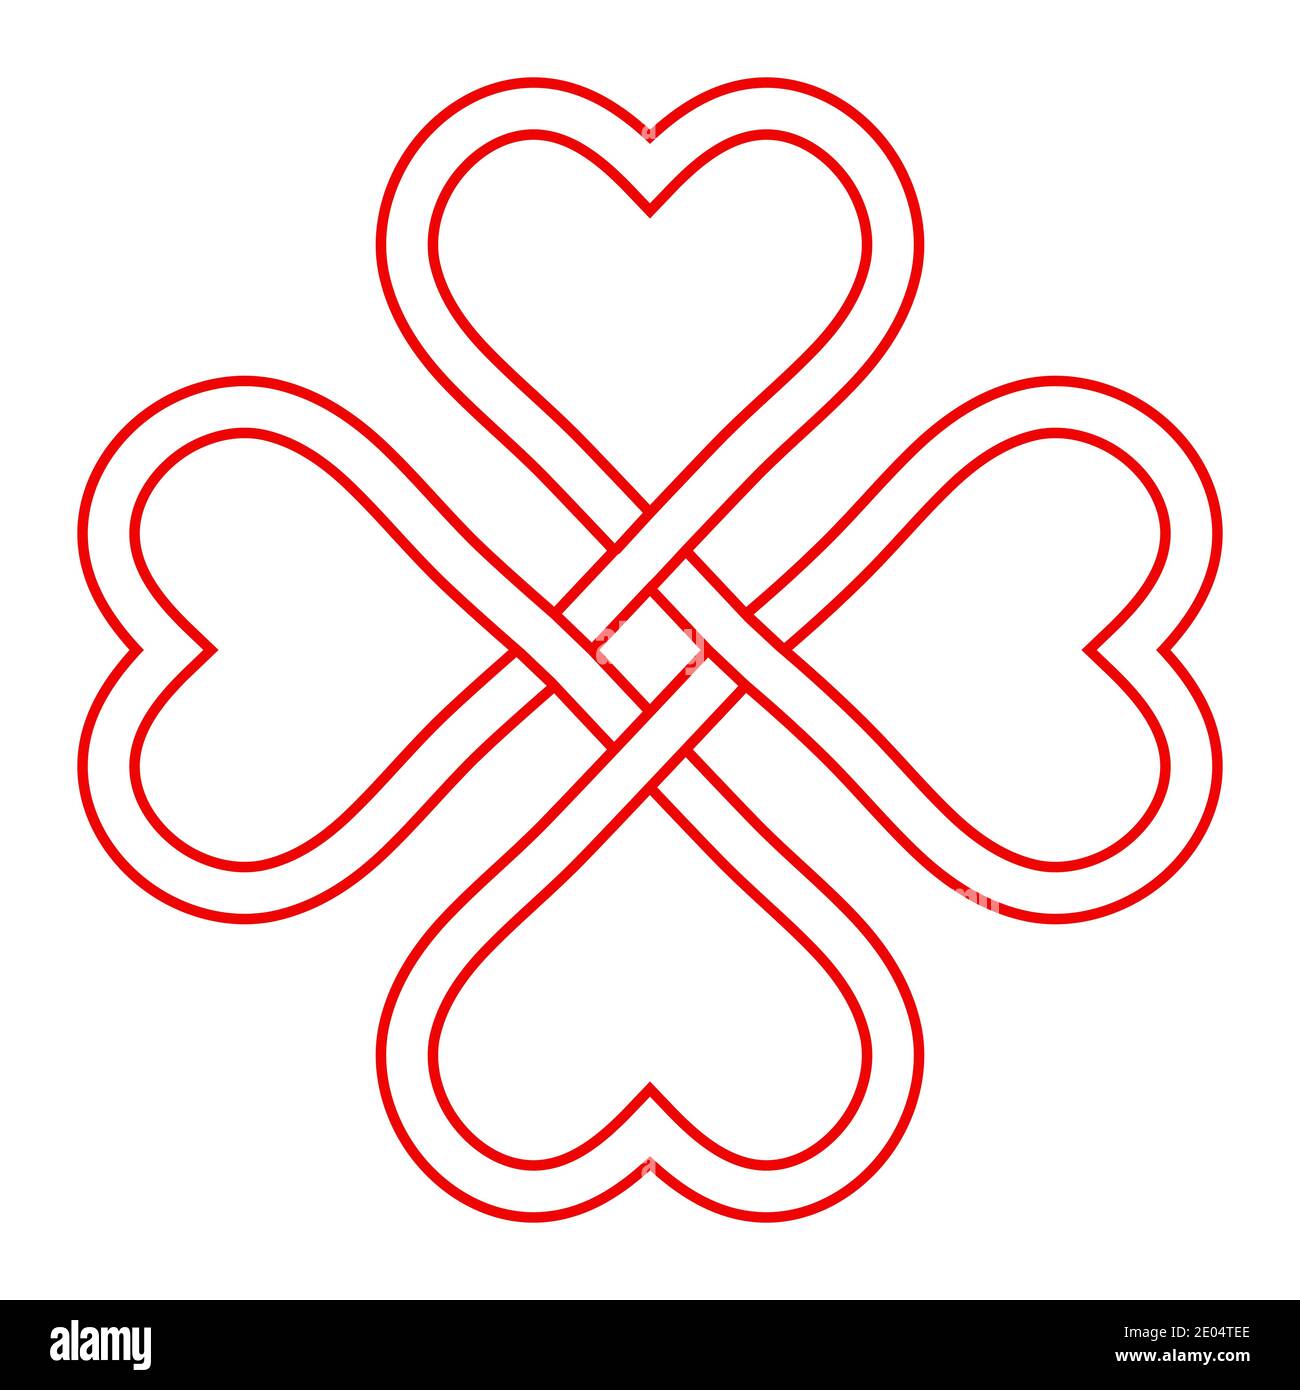 Símbolo de amor y buena suerte, vector entrelazado nudo de corazones, forma  de trébol de cuatro hojas para atraer la buena suerte y el amor en el día  de San Patricio Imagen